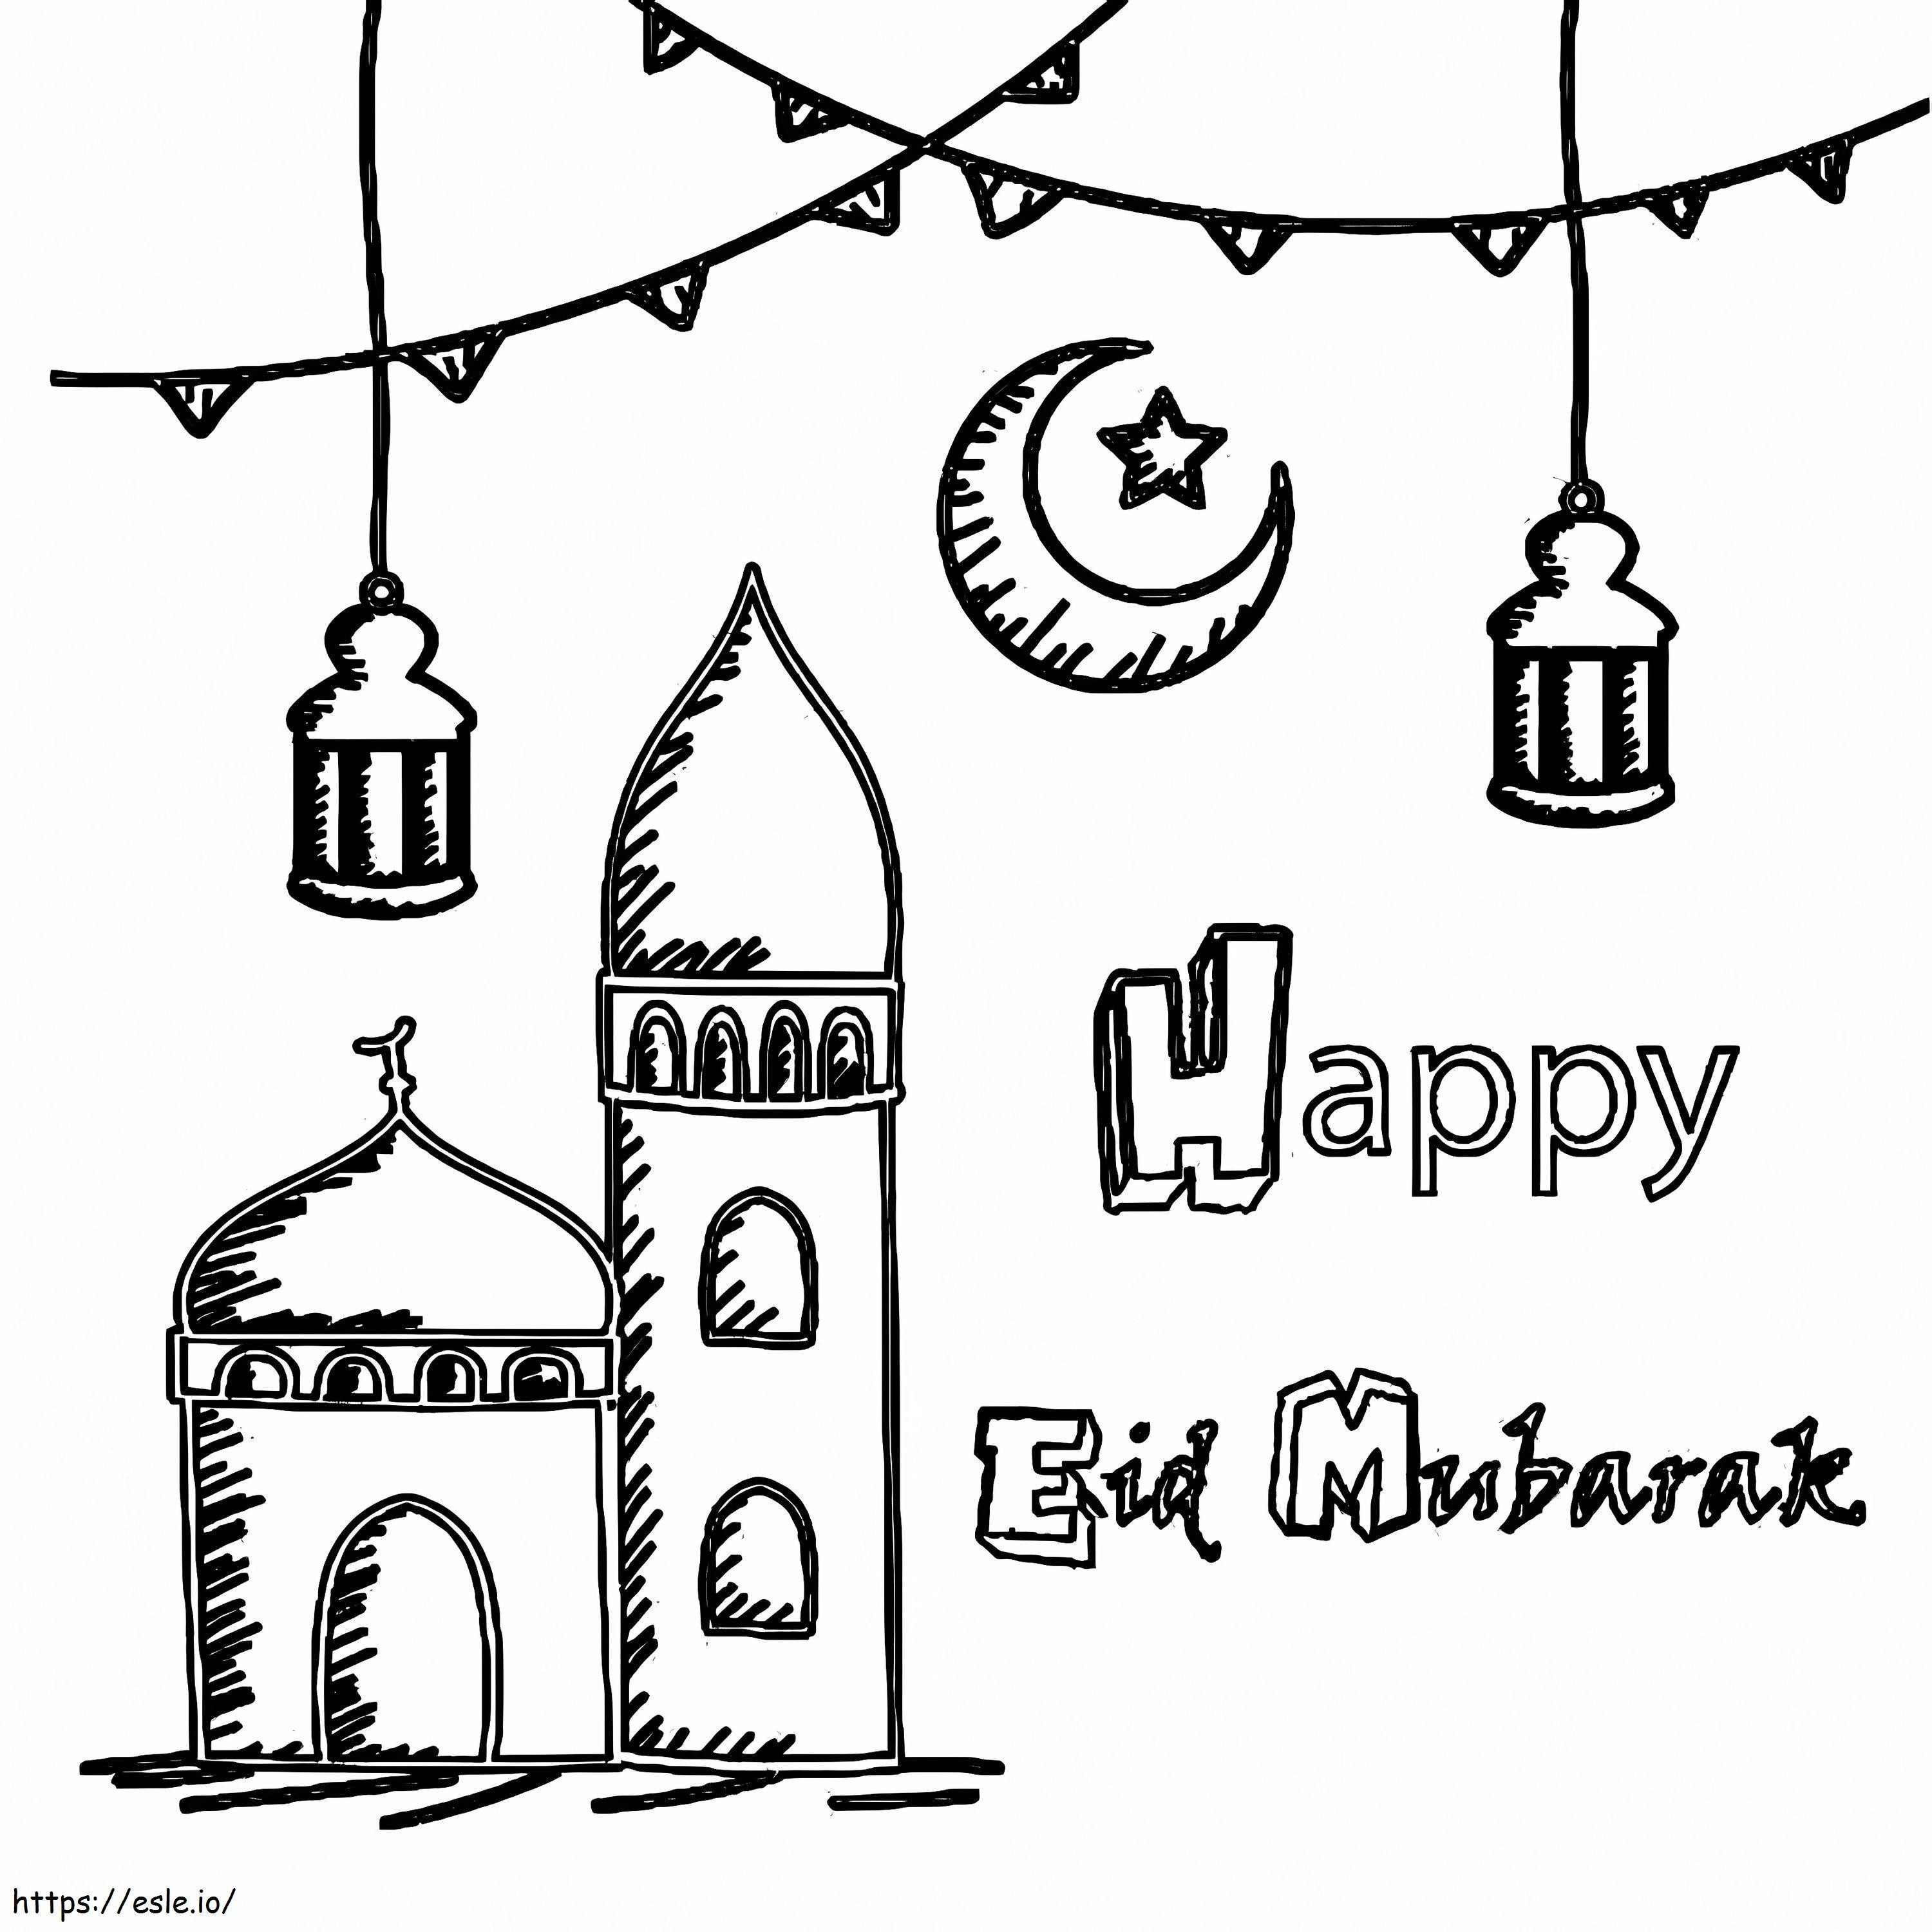 Happy Eid Mubarak 1 coloring page